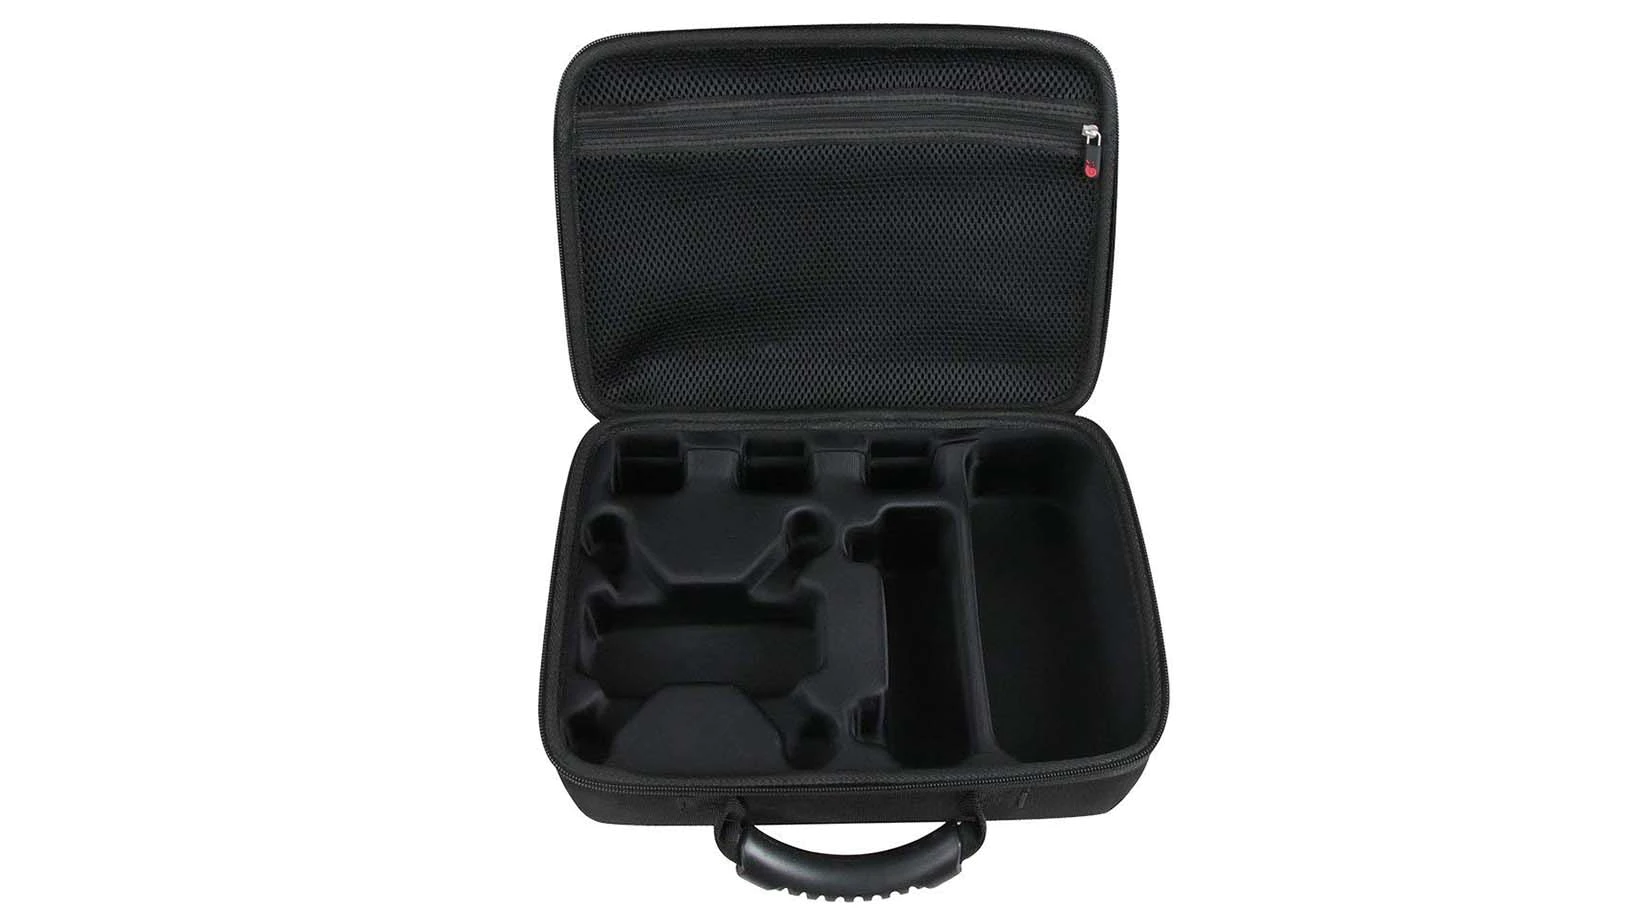 Prosperity waterproof eva protective case speaker case for gopro camera